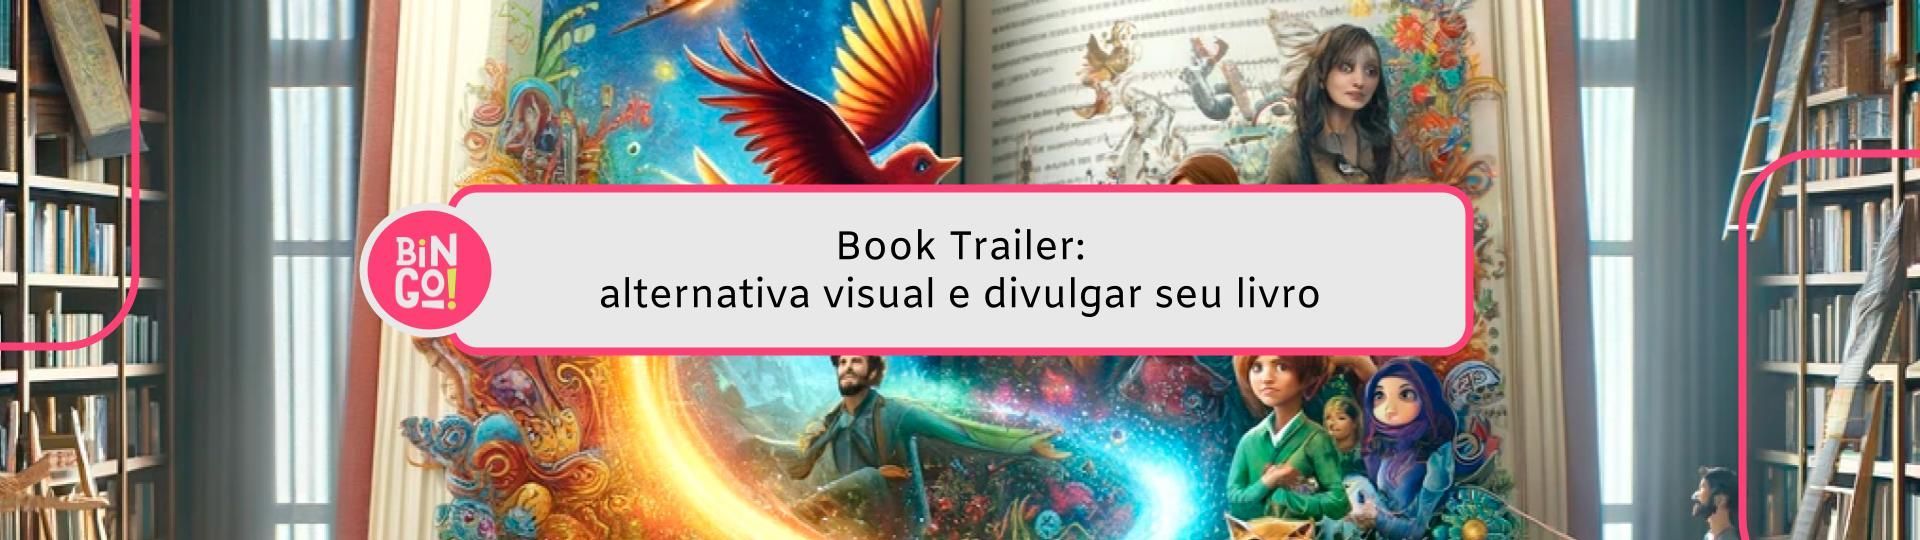 book-trailer-alternativa-visual-e-divulgar-seu-livro